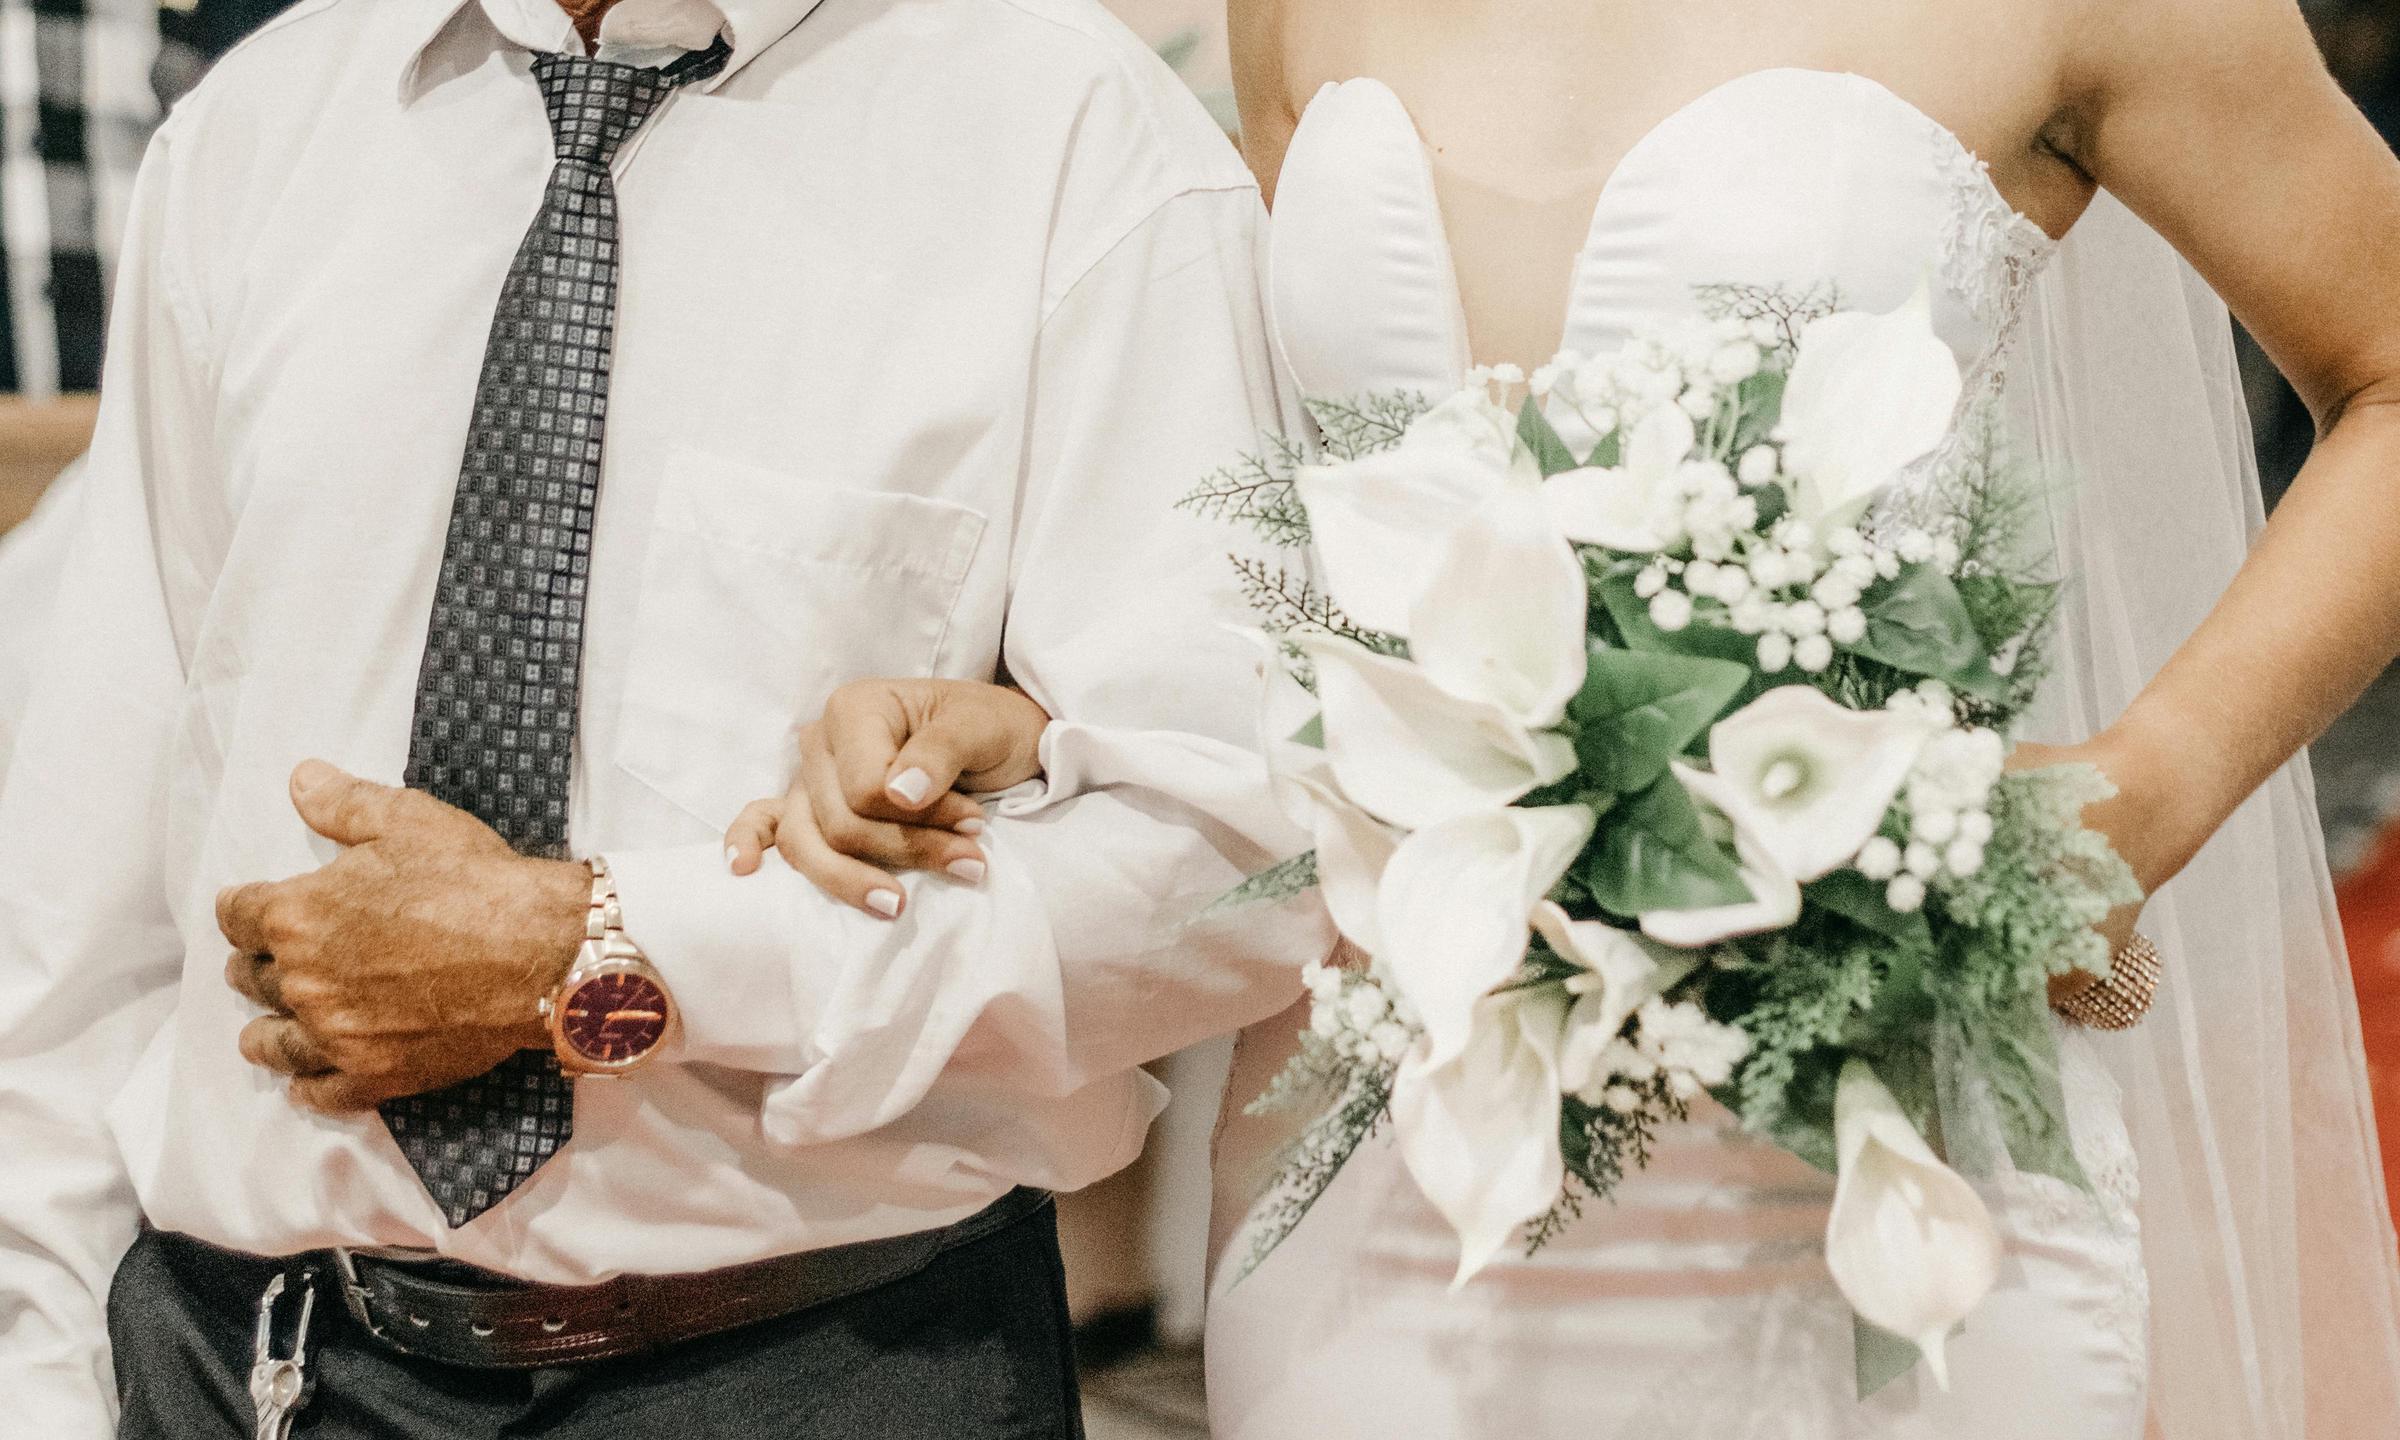 Un père accompagnant une mariée à l'autel | Source : Pexels